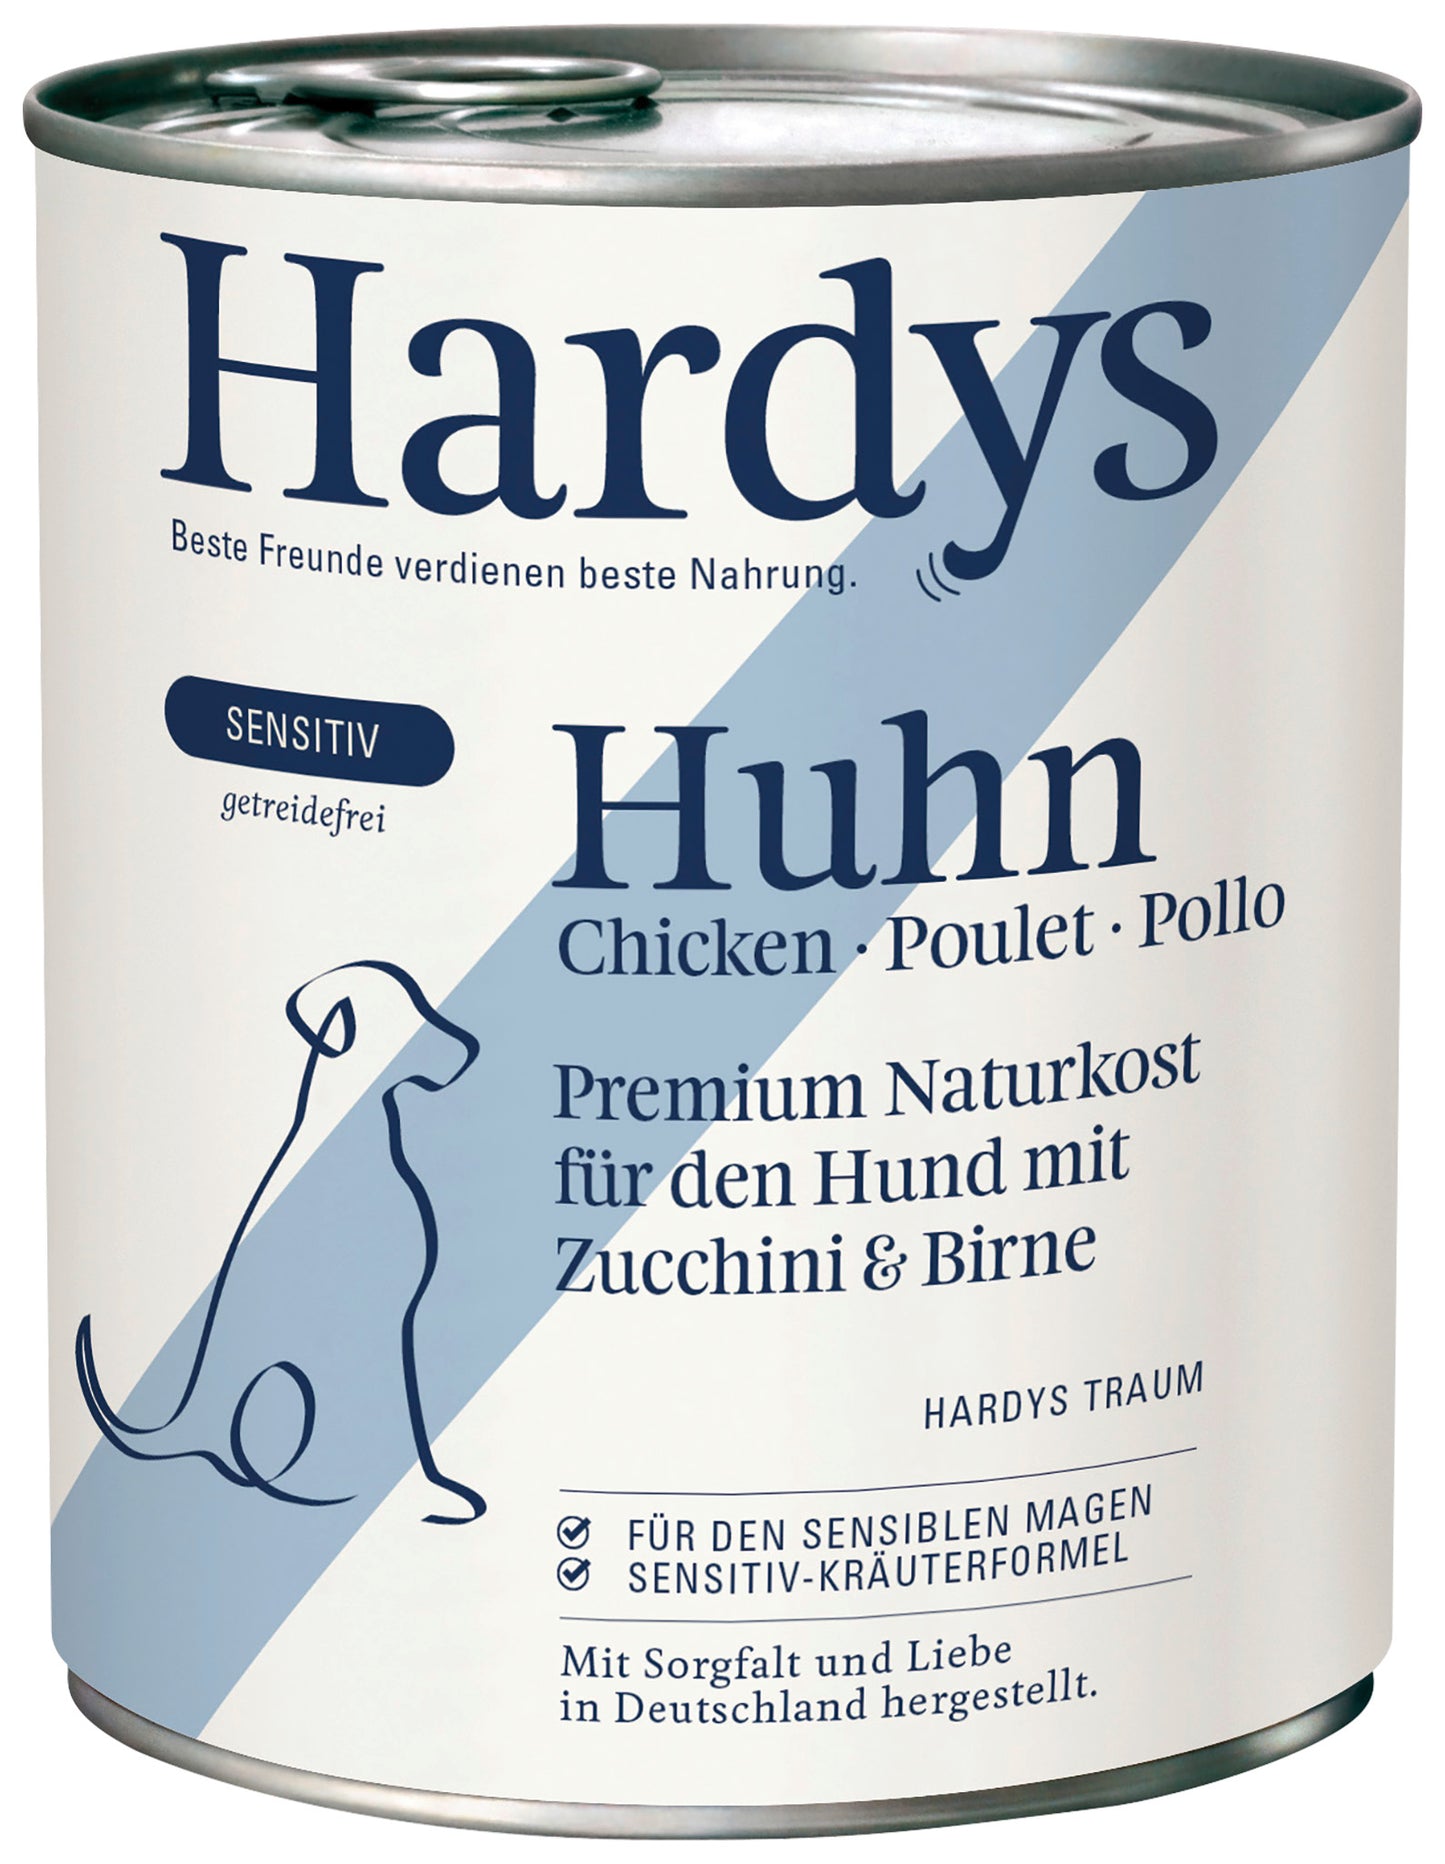 Hardys Huhn mit Zucchini & Birne - Sensitiv 800g